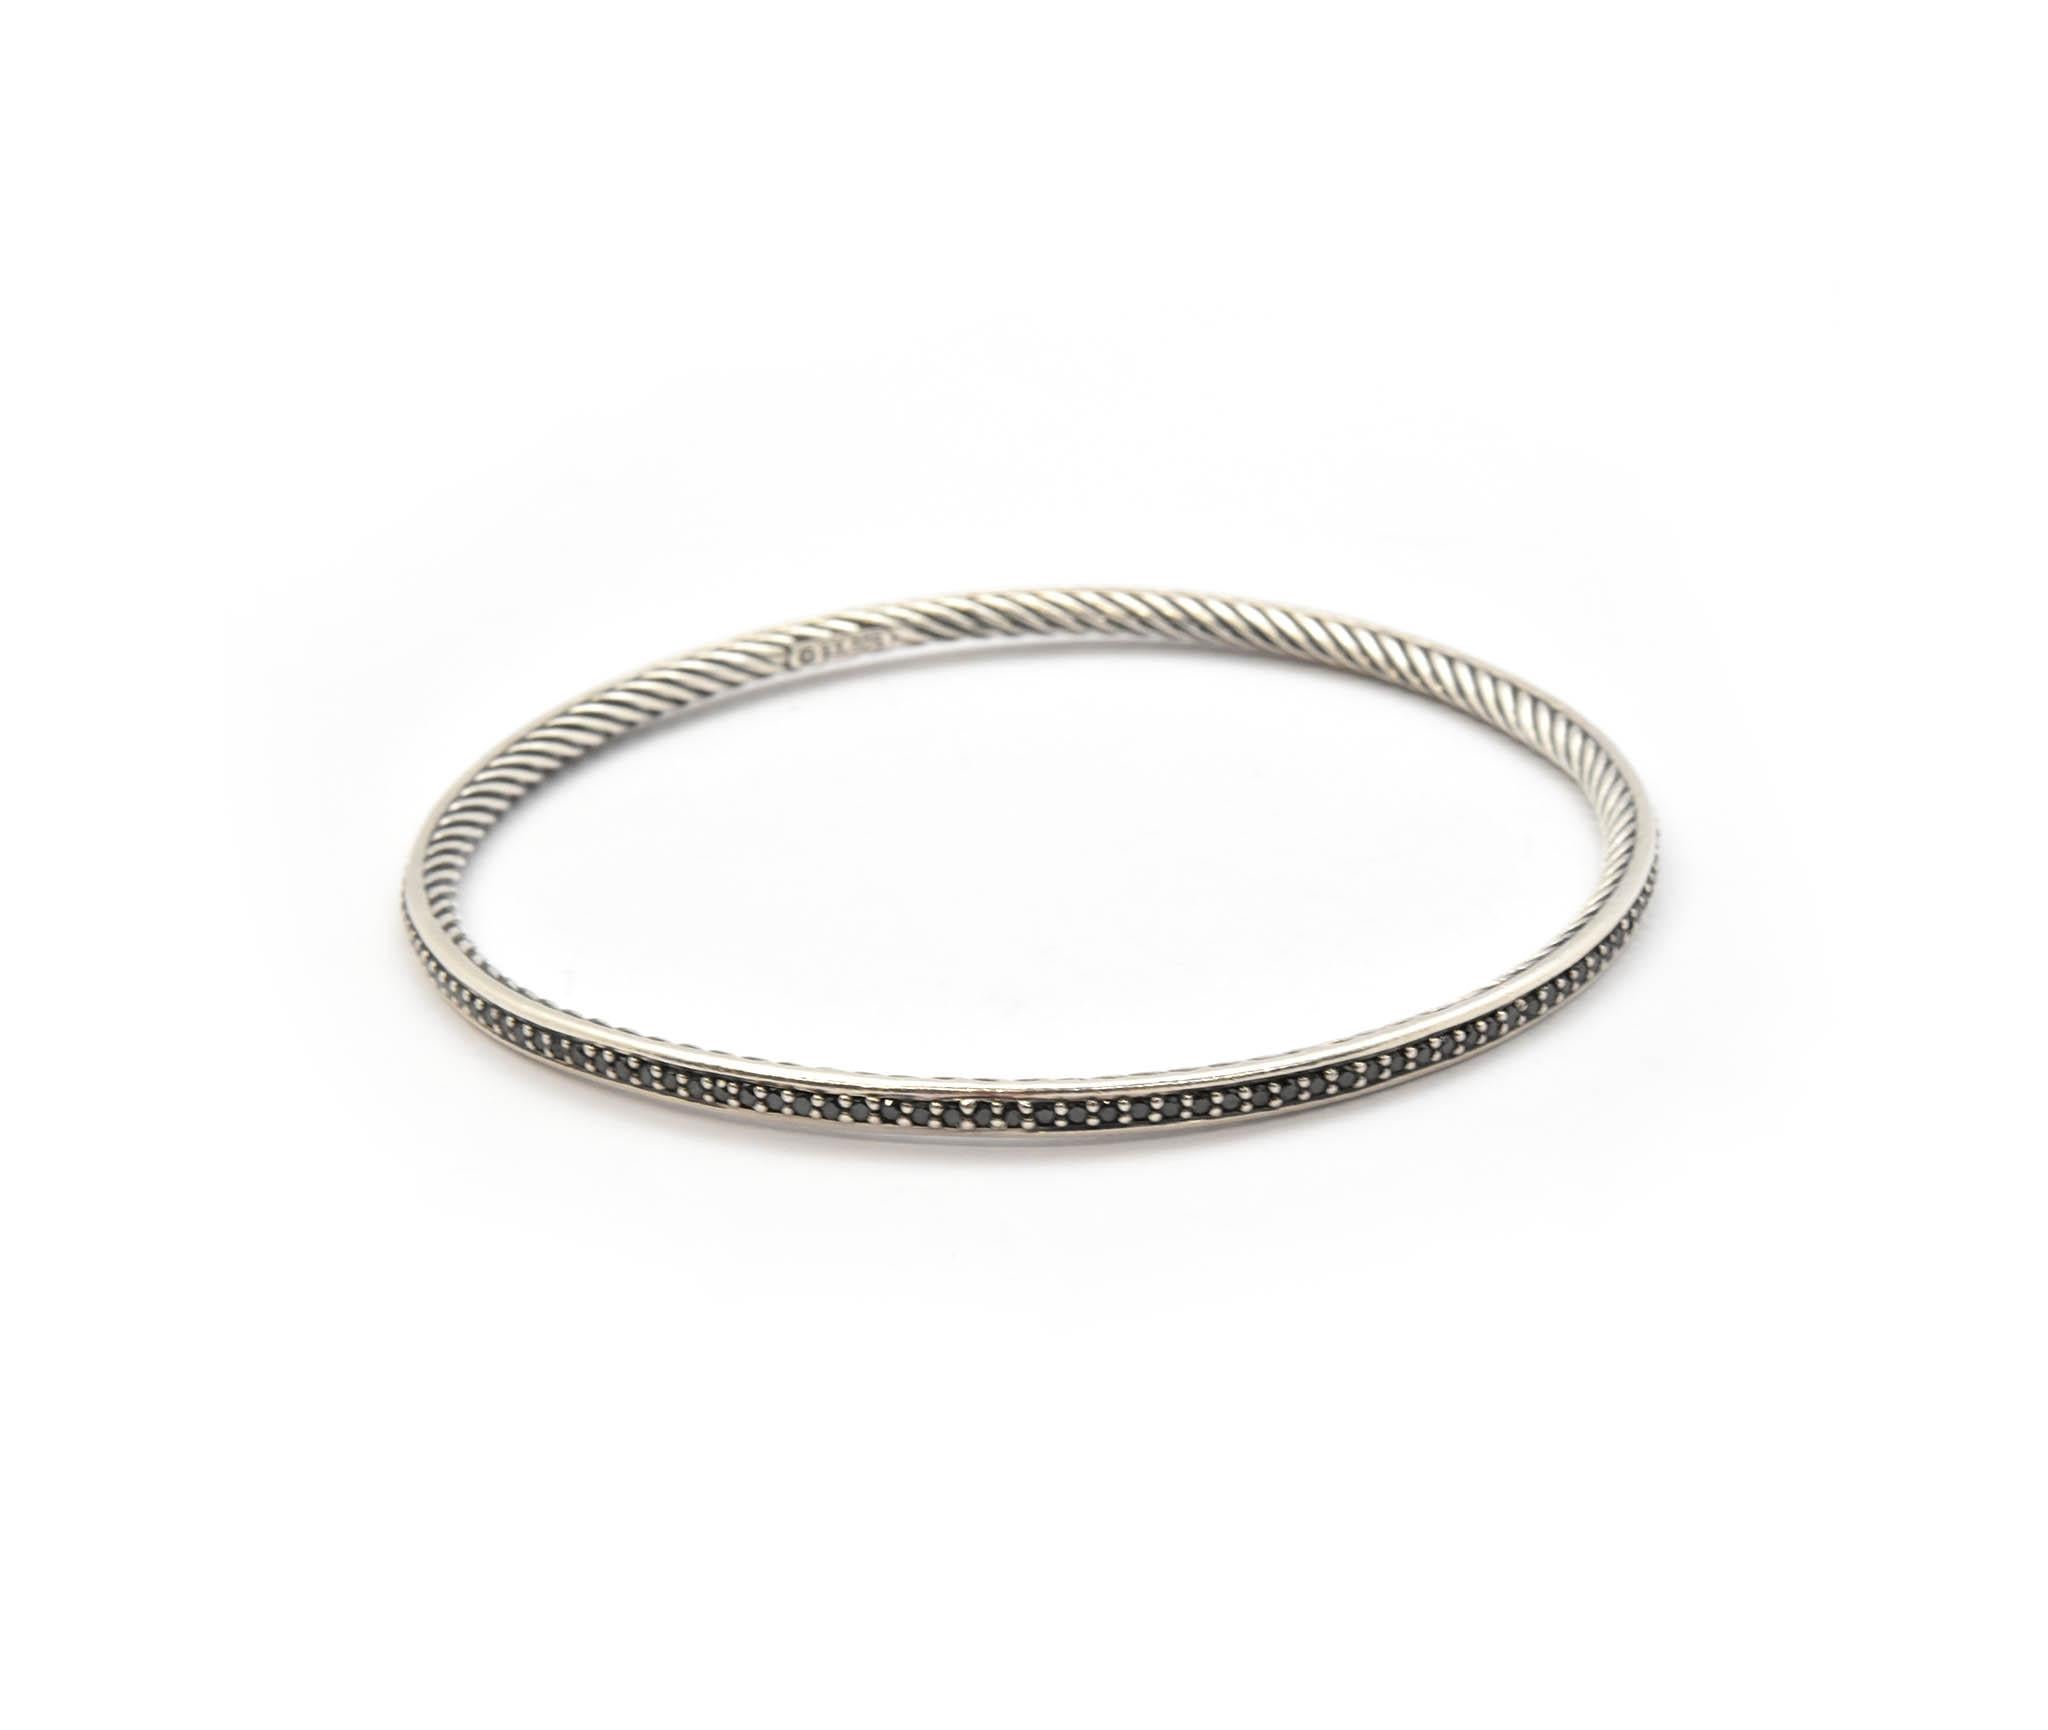 Ce bracelet câble David Yurman est façonné en argent sterling et serti de diamants noirs sur l'extérieur du bracelet ! Les diamants noirs sont ronds et chacun est maintenu en place par des griffes en argent sterling. Les motifs classiques des câbles